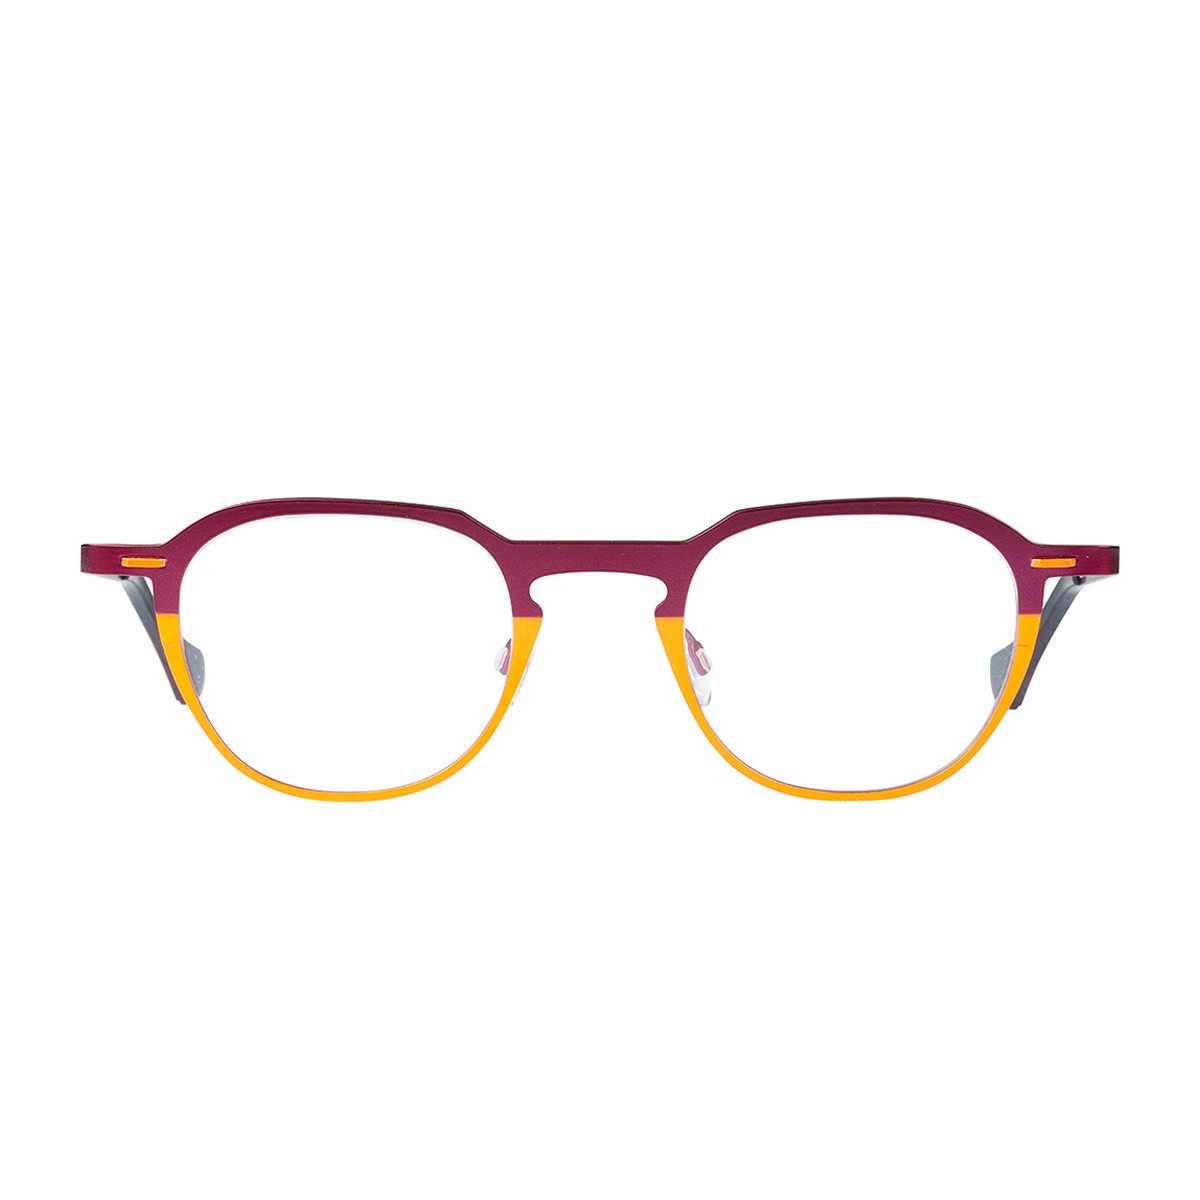 Matttew Papaya | Men's eyeglasses